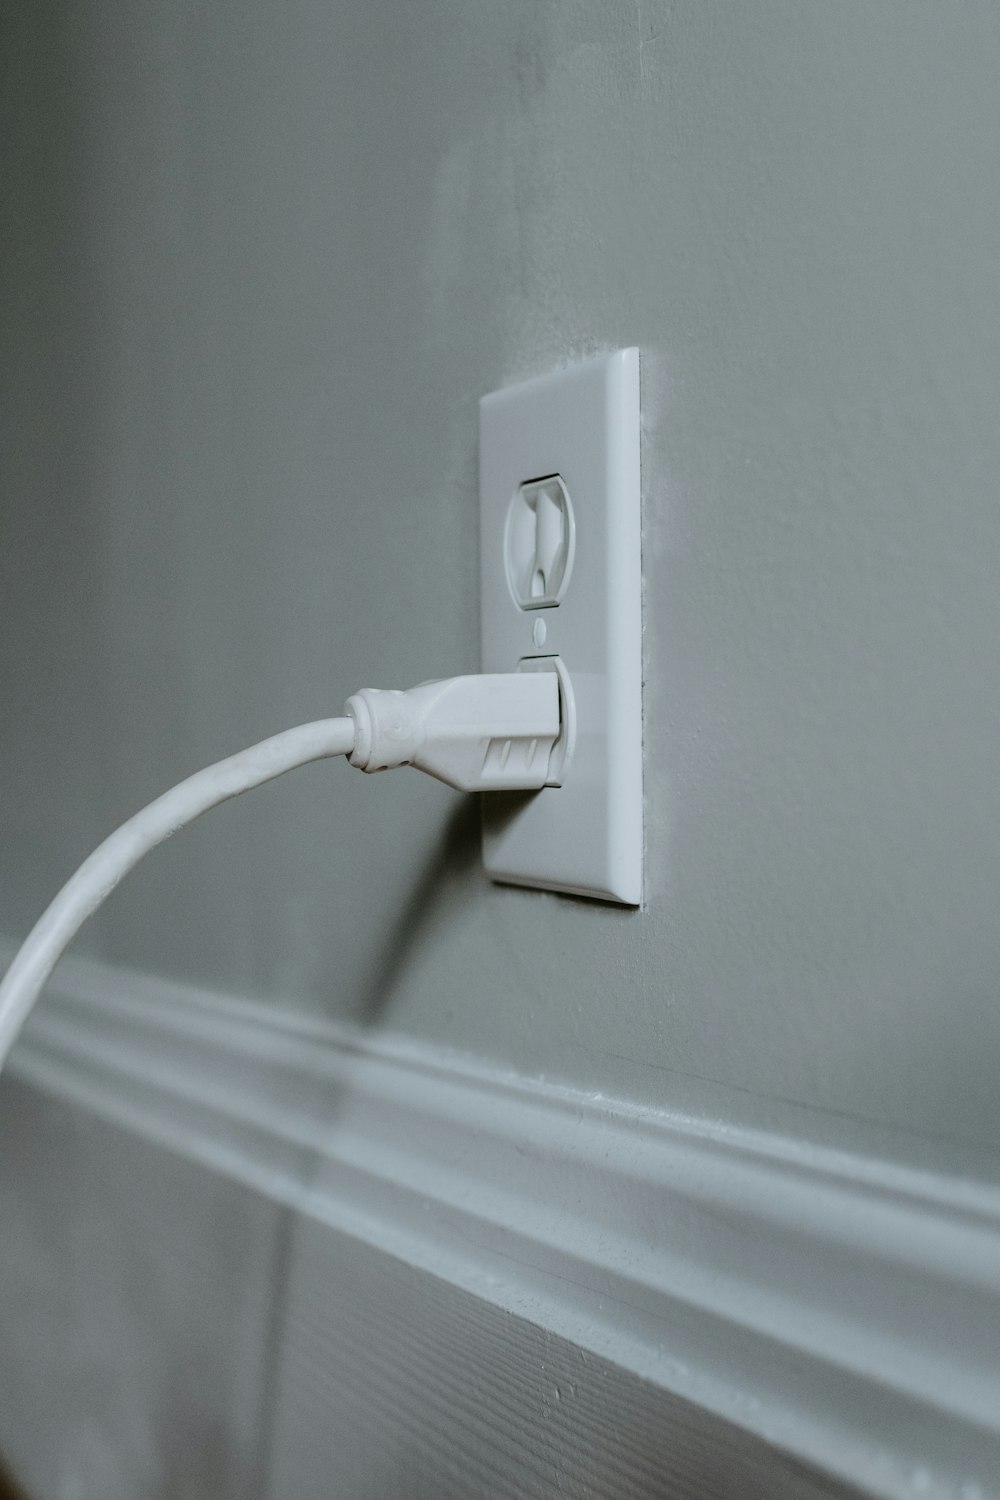 Cavo USB bianco collegato alla presa elettrica bianca